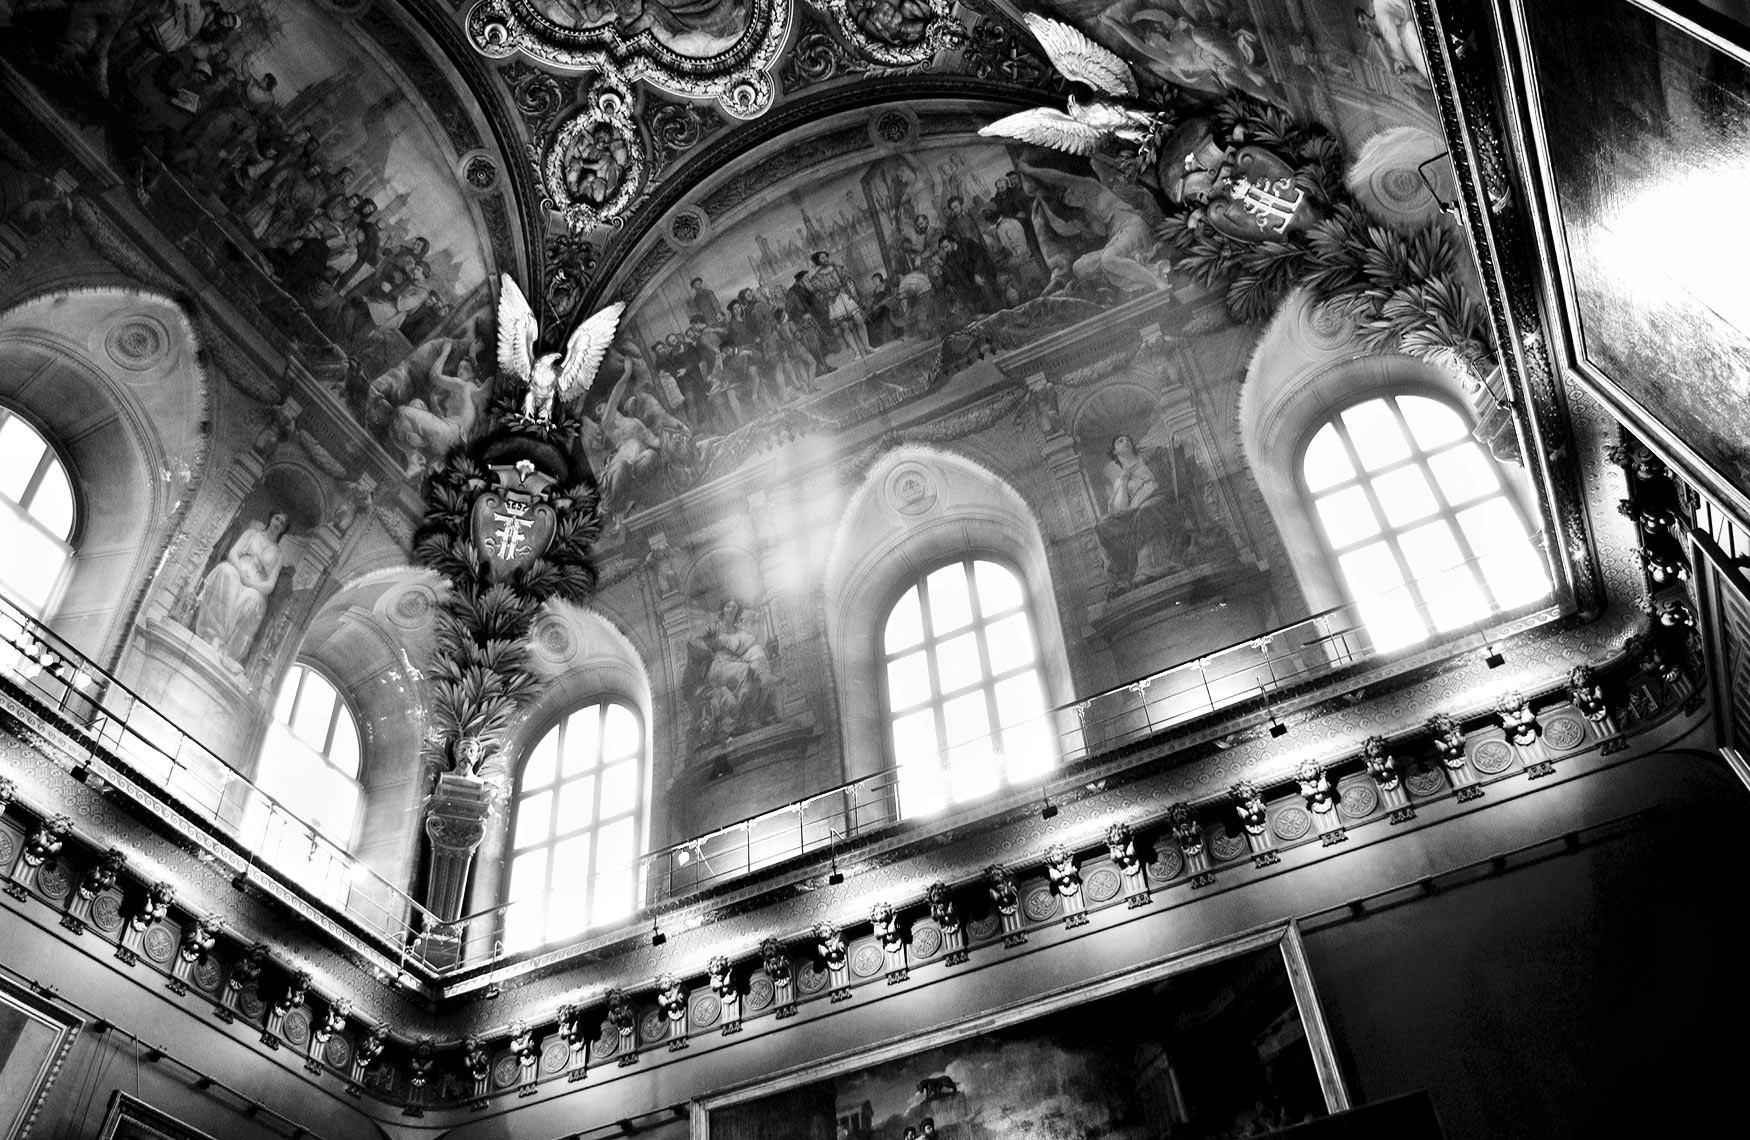 Louvre museum interior ceiling